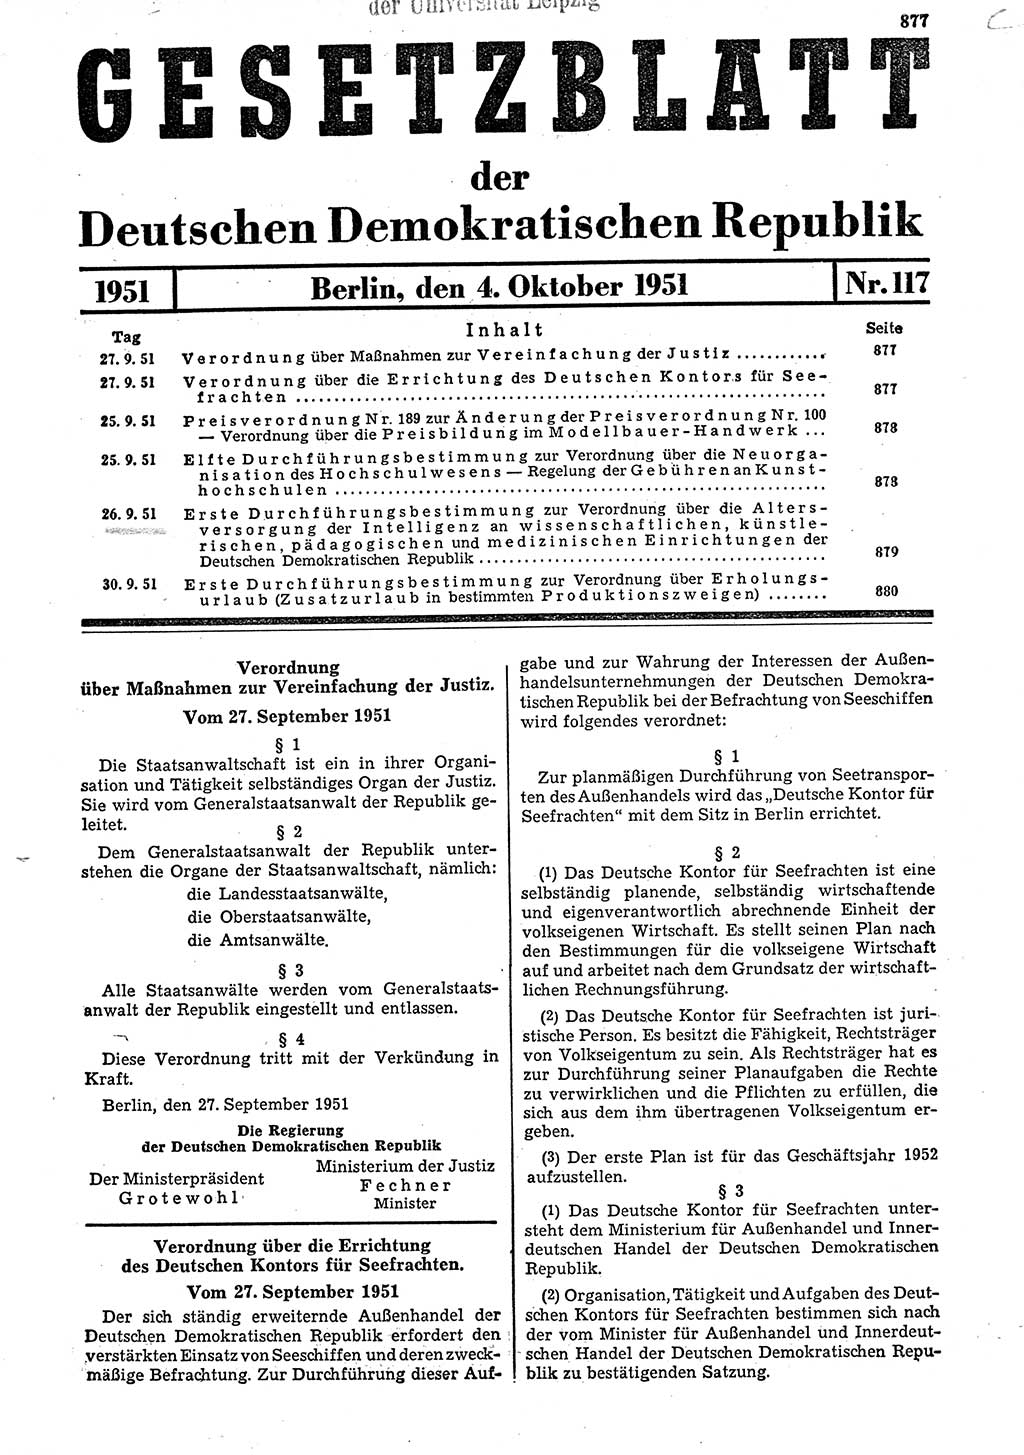 Gesetzblatt (GBl.) der Deutschen Demokratischen Republik (DDR) 1951, Seite 877 (GBl. DDR 1951, S. 877)